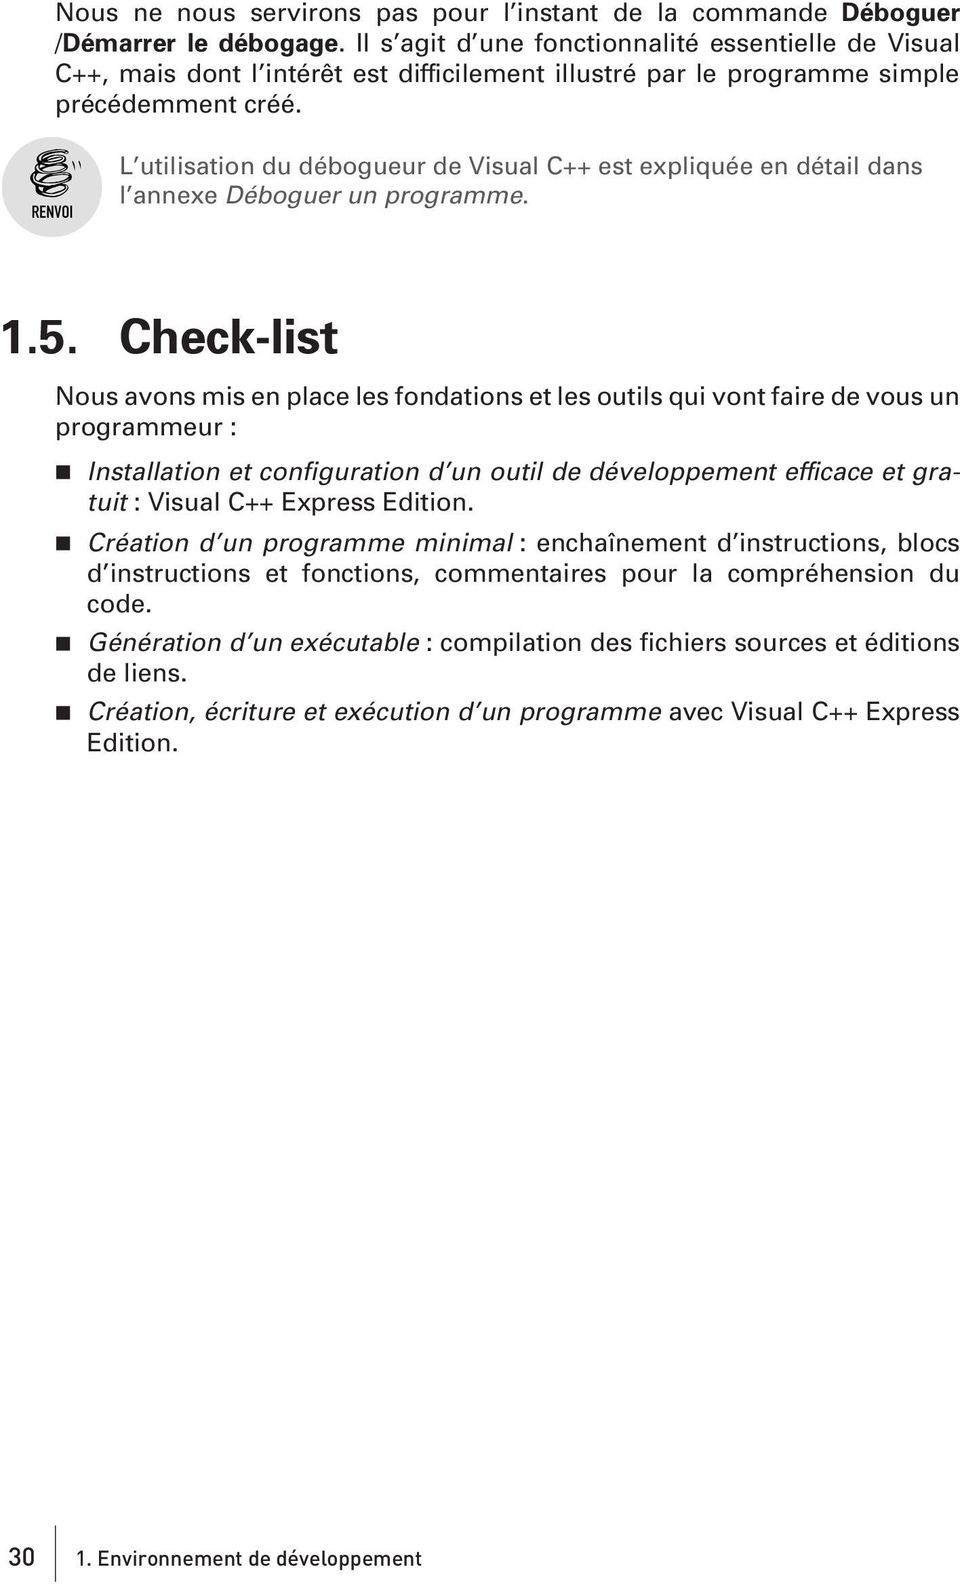 L utilisation du débogueur de Visual C++ est expliquée en détail dans l annexe Déboguer un programme. 1.5.